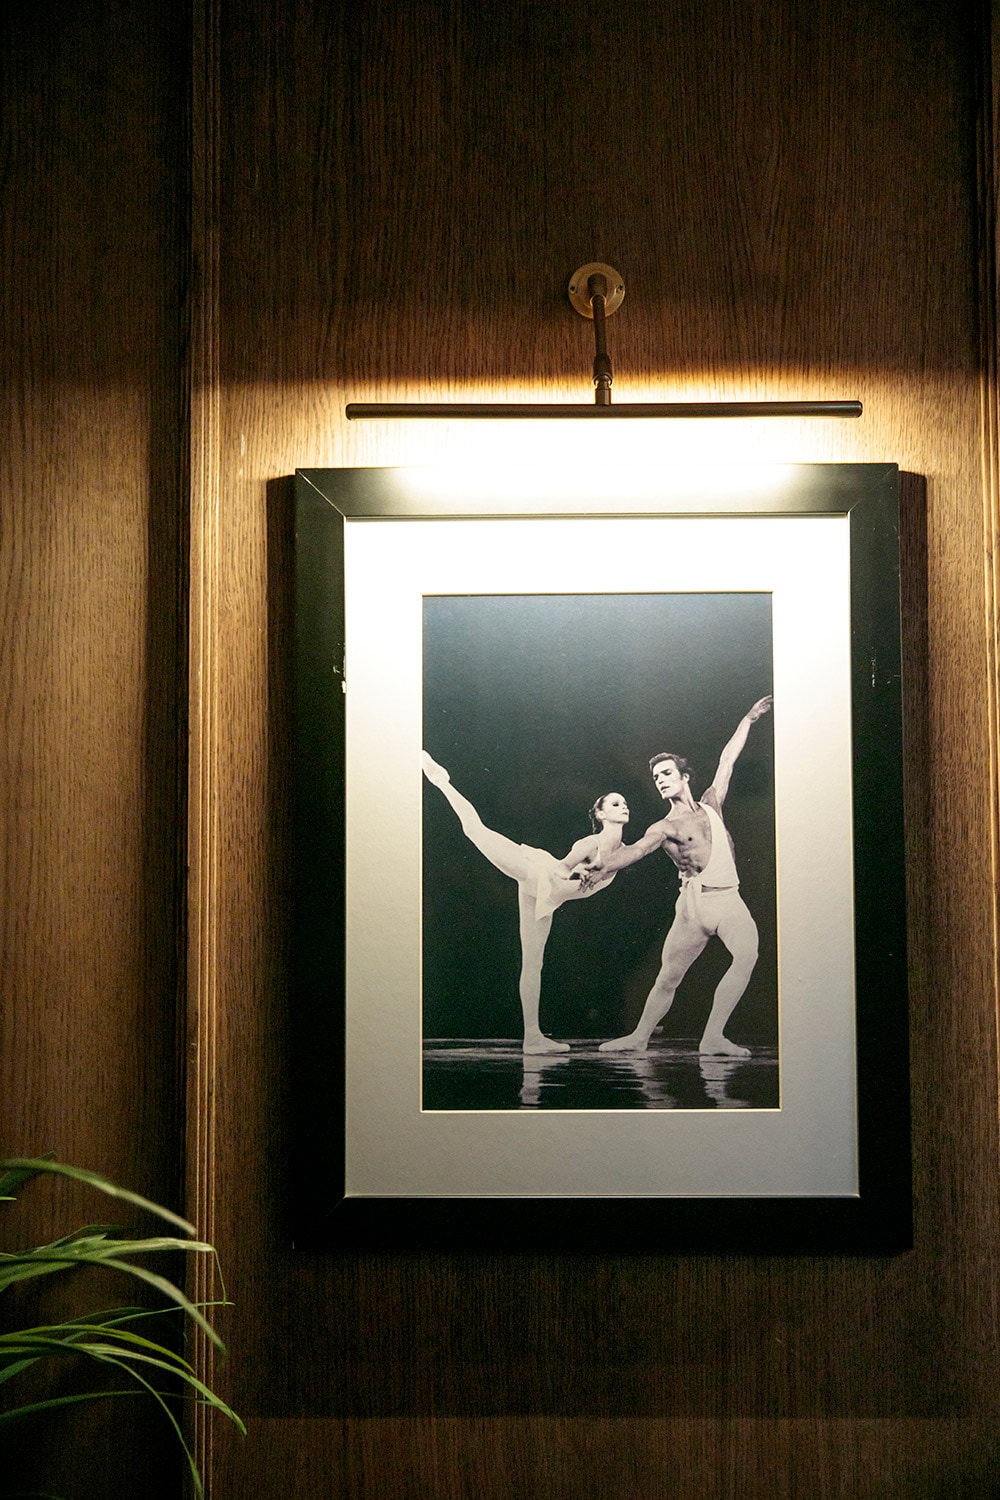 クルピンの現役時代の写真などダンサーの写真があちこちに飾られている。